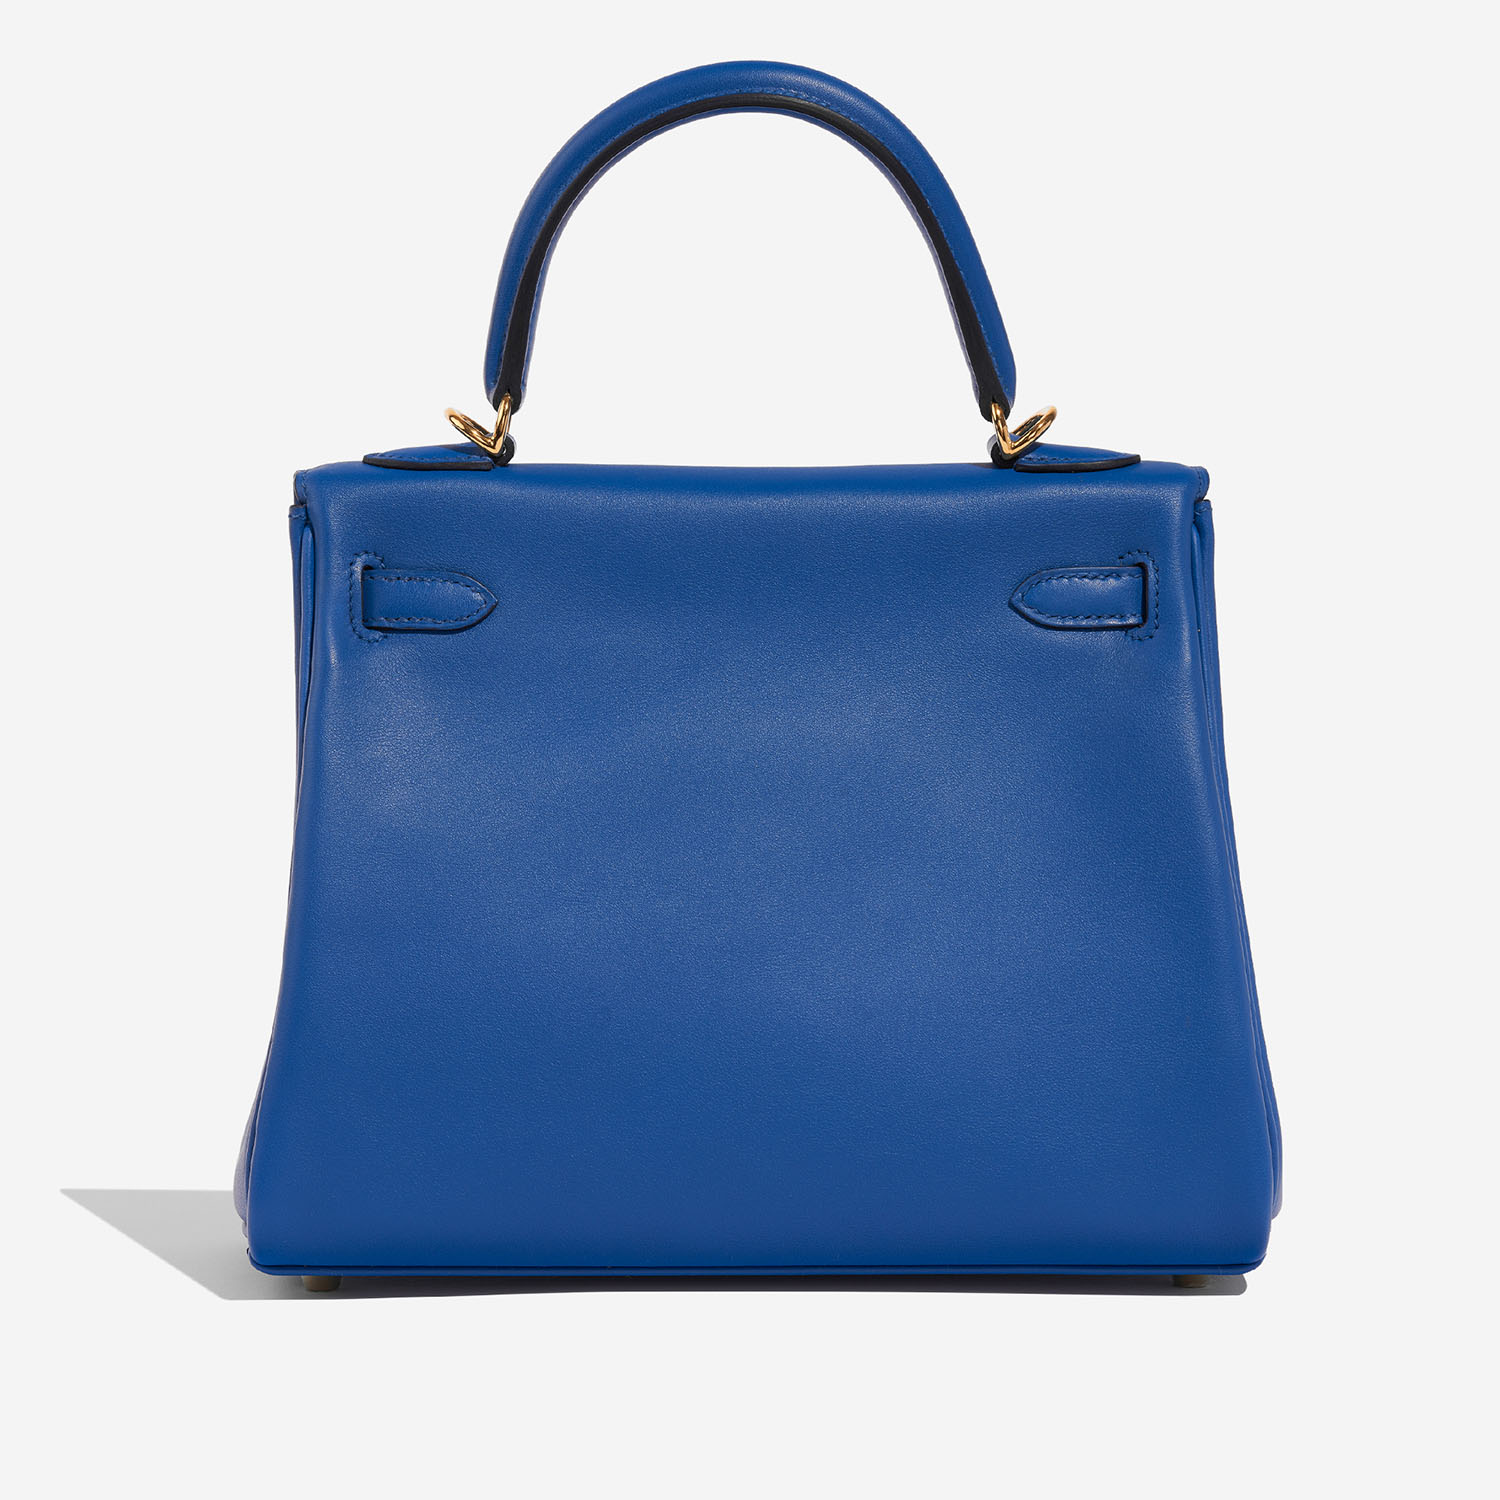 Hermès Kelly 25 BleuFrance Back  | Sell your designer bag on Saclab.com